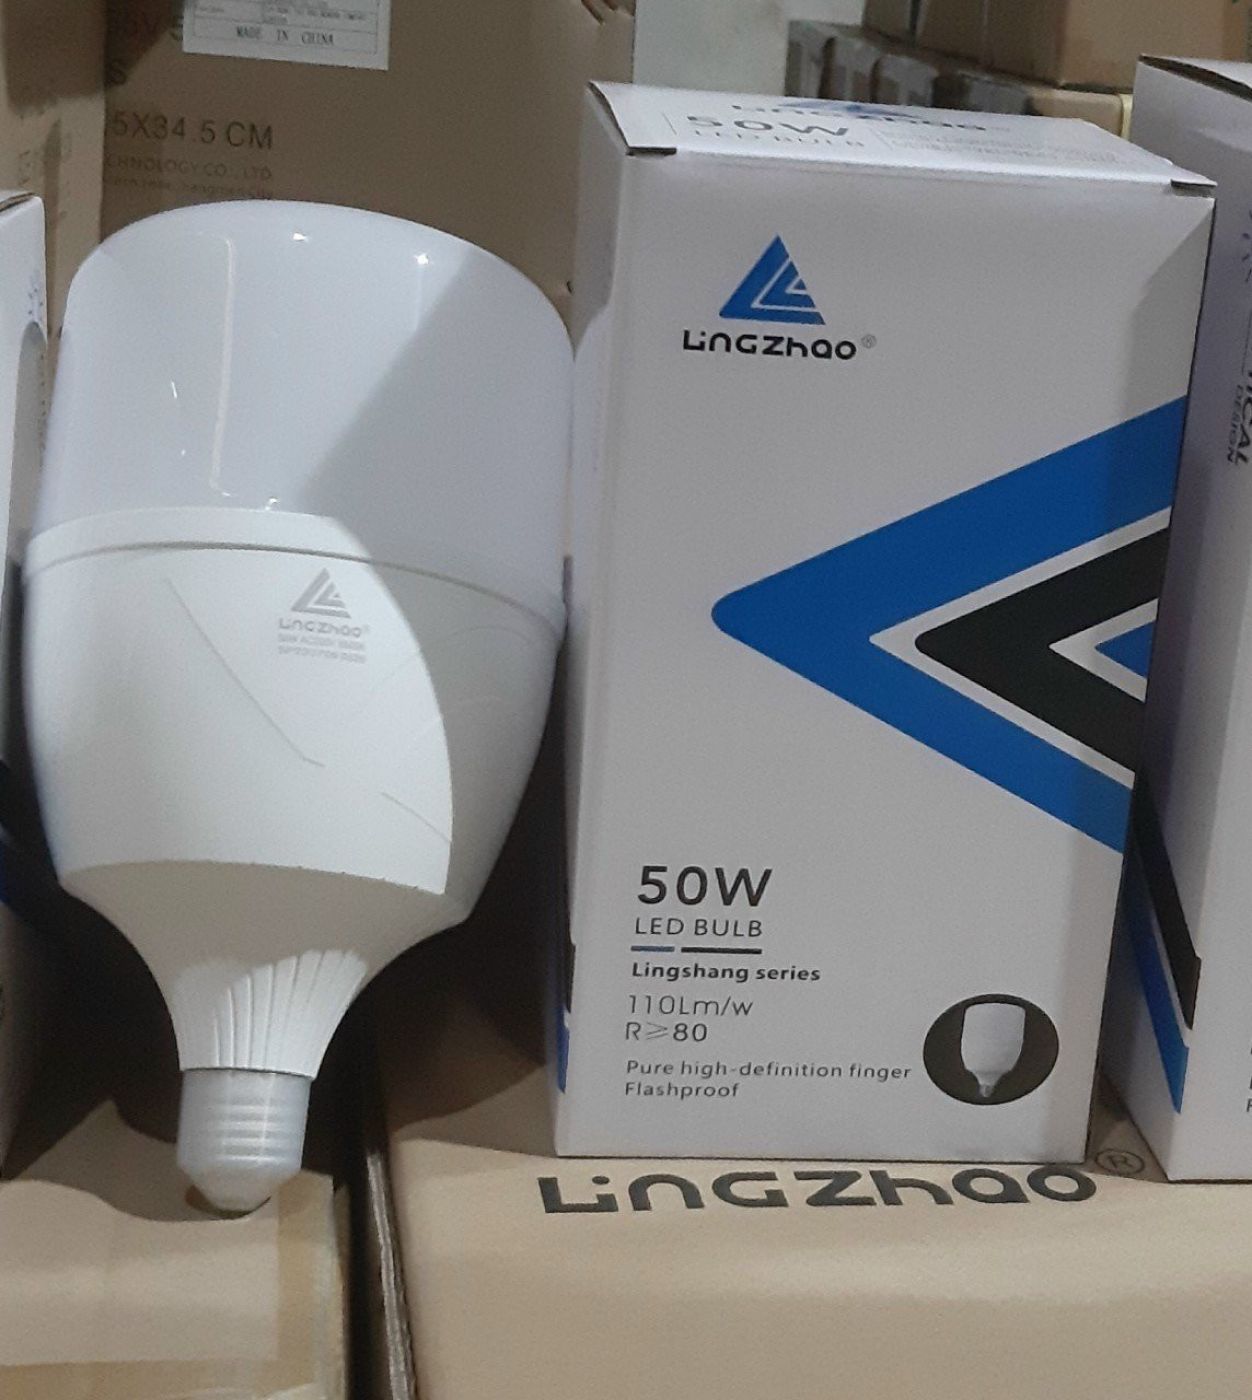 Bóng đèn led 50w ánh sáng trắng Lingzhao bảo hành 2 năm đổi mới